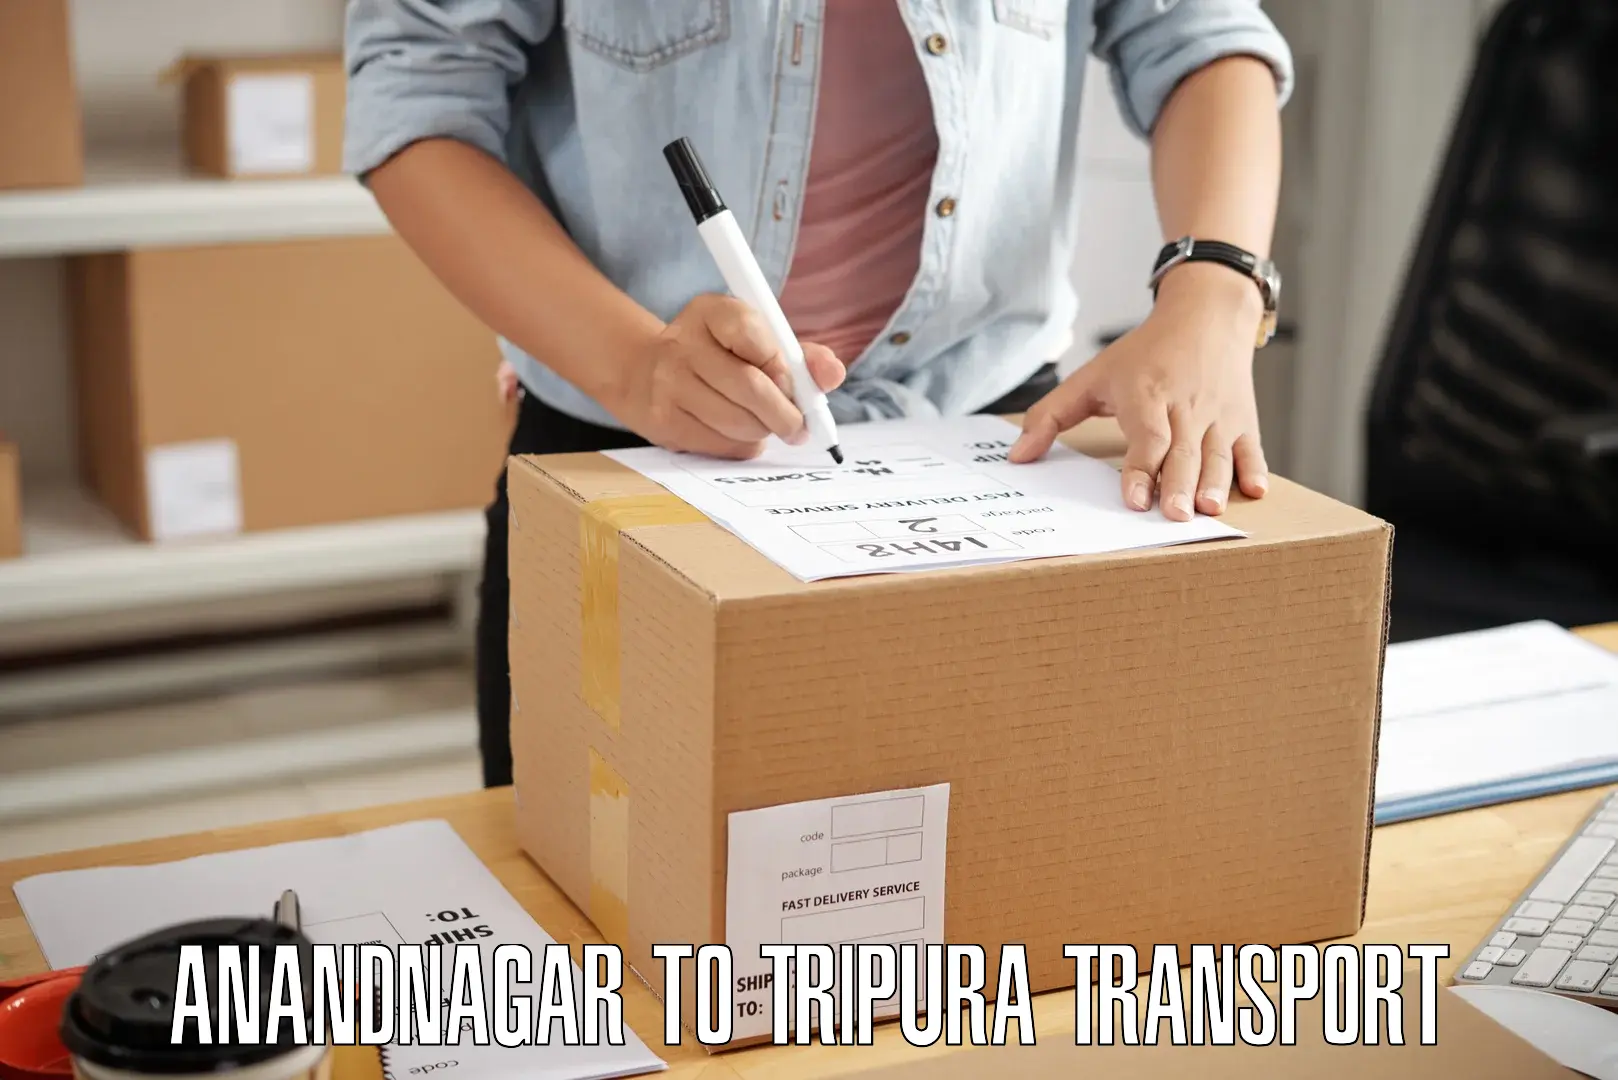 Logistics transportation services Anandnagar to Santirbazar